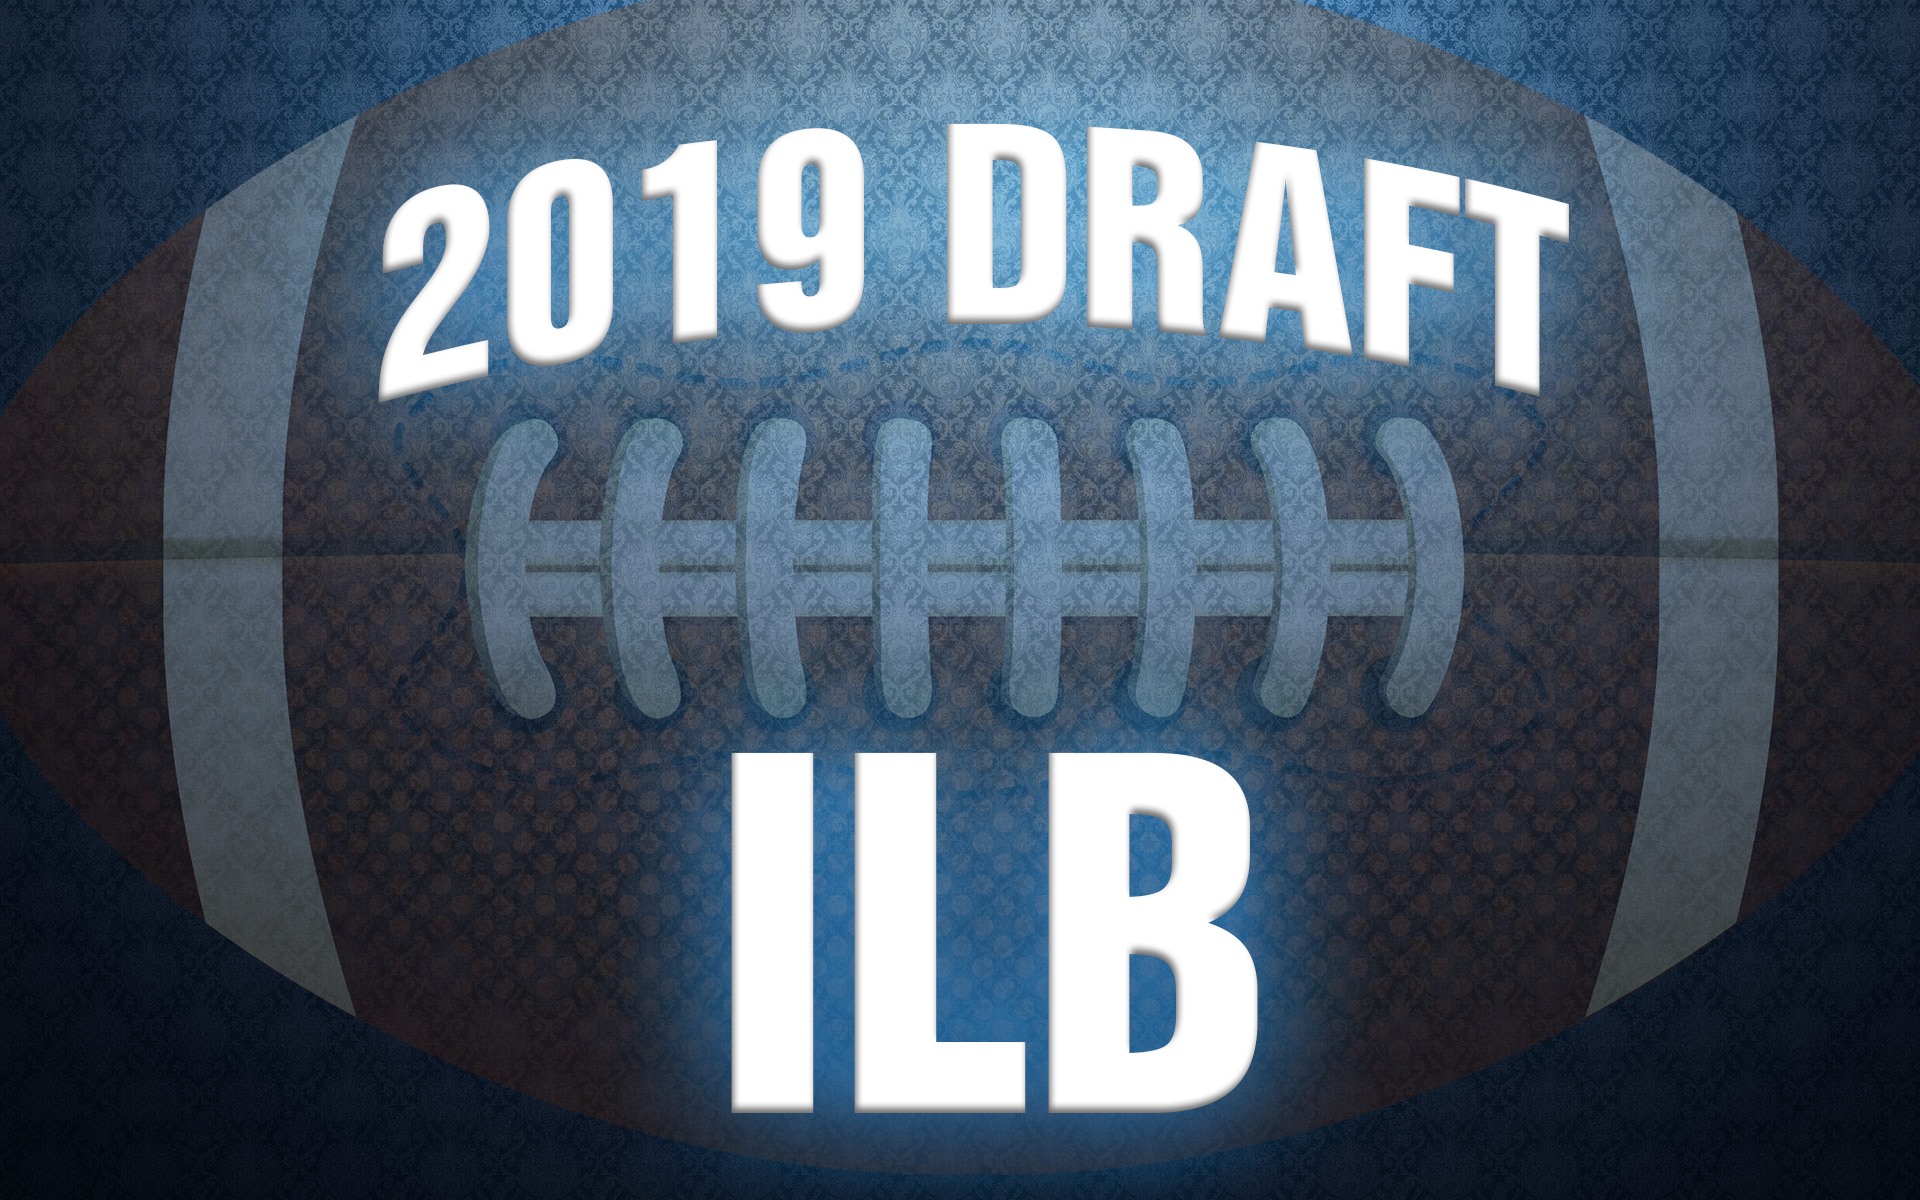 NFL Draft inside linebacker Rankings 2019